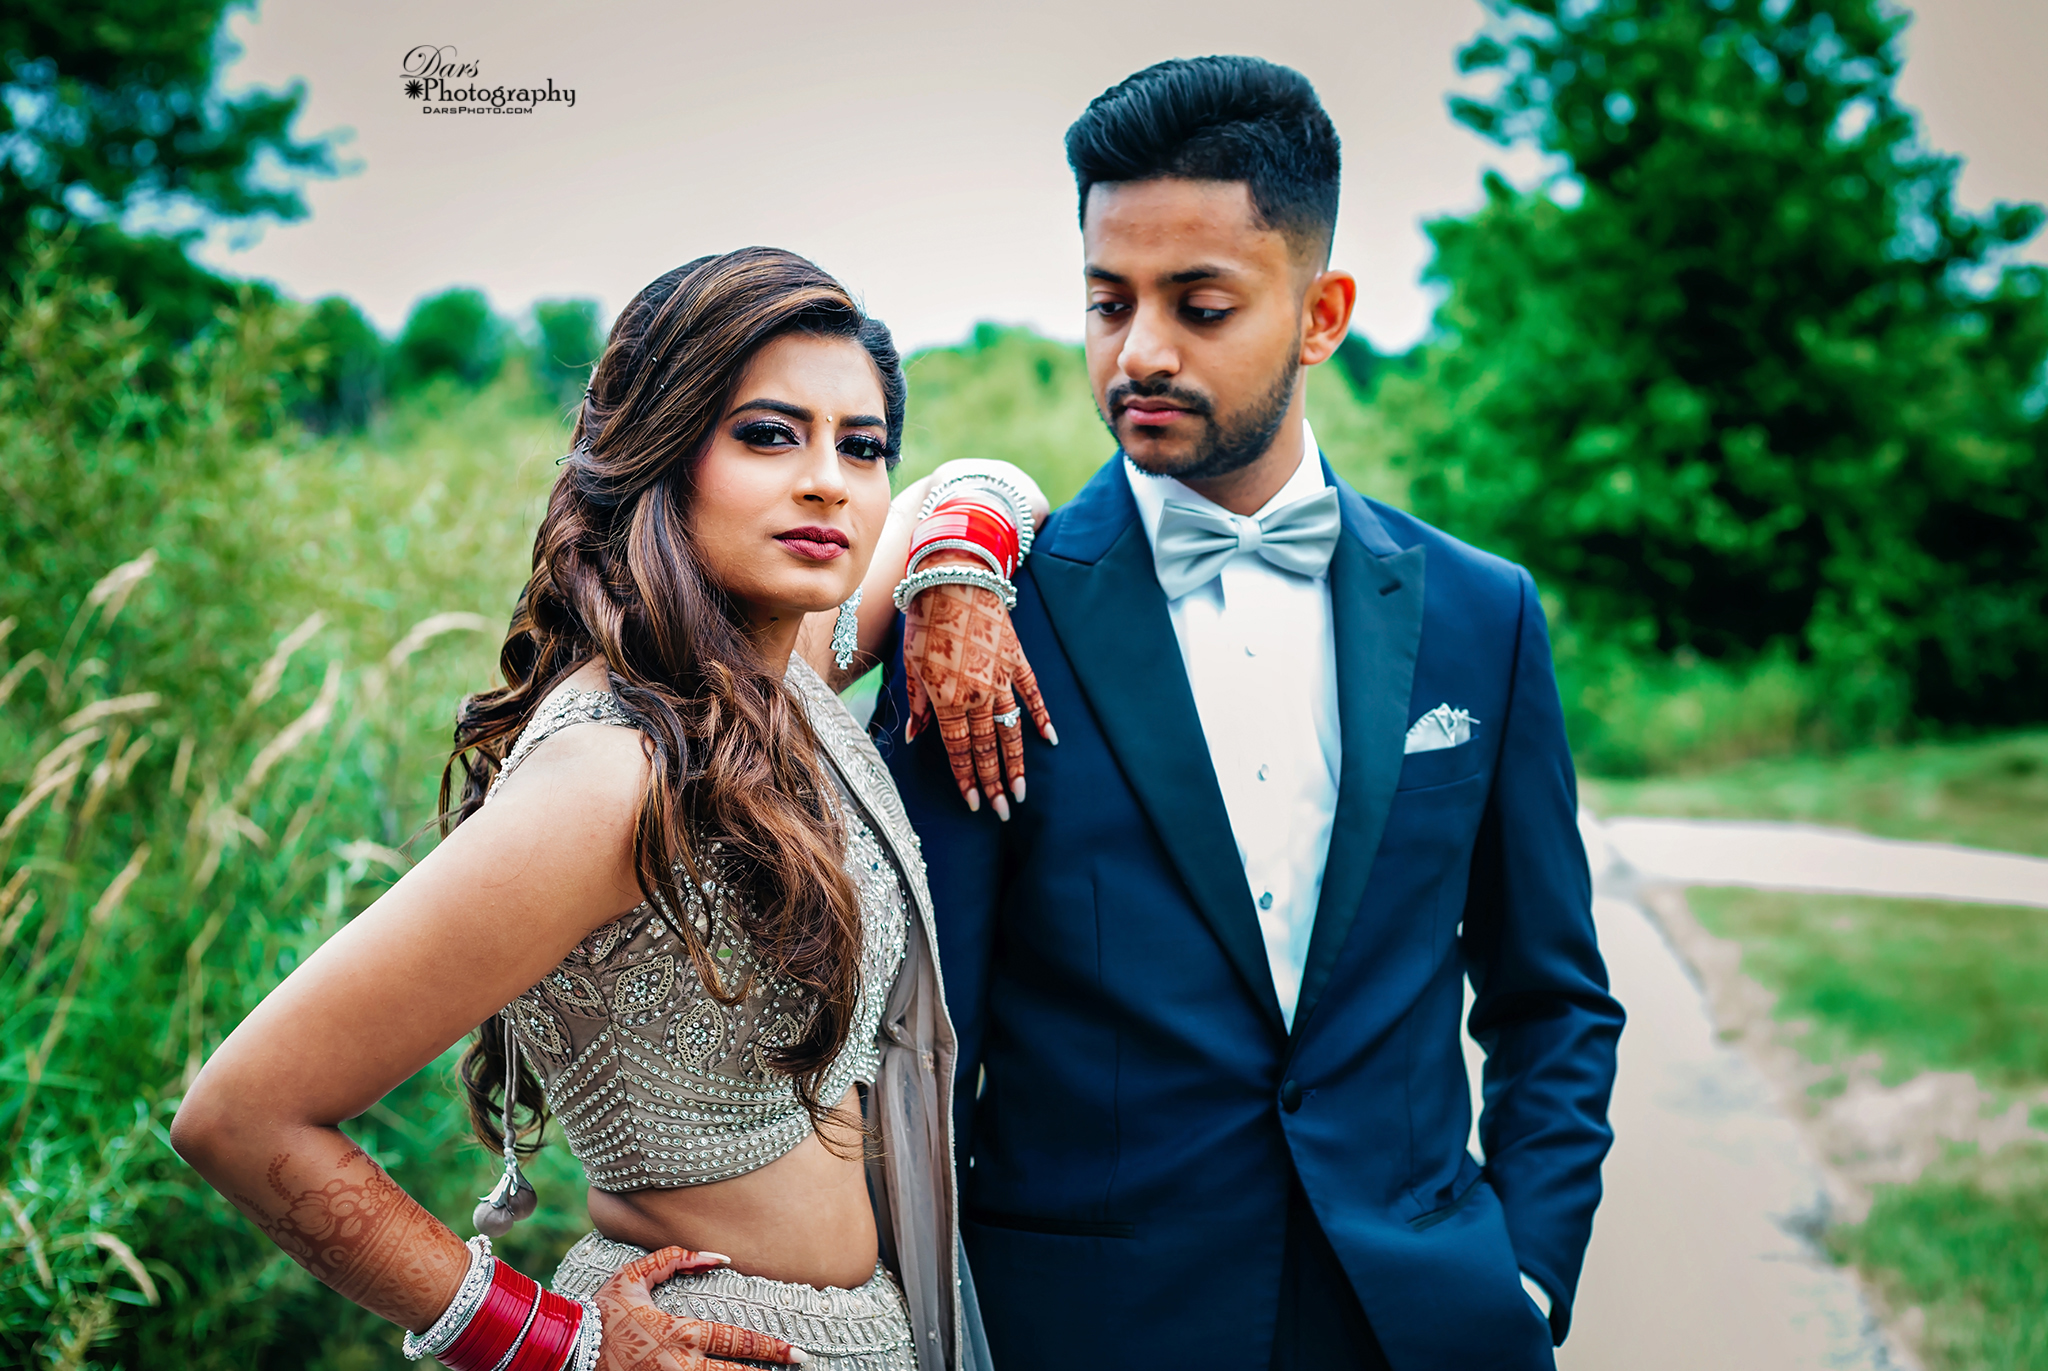 Ravishing Indian couple's wedding reception attire. | Indian wedding poses, Indian  wedding couple photography, Indian wedding photography couples